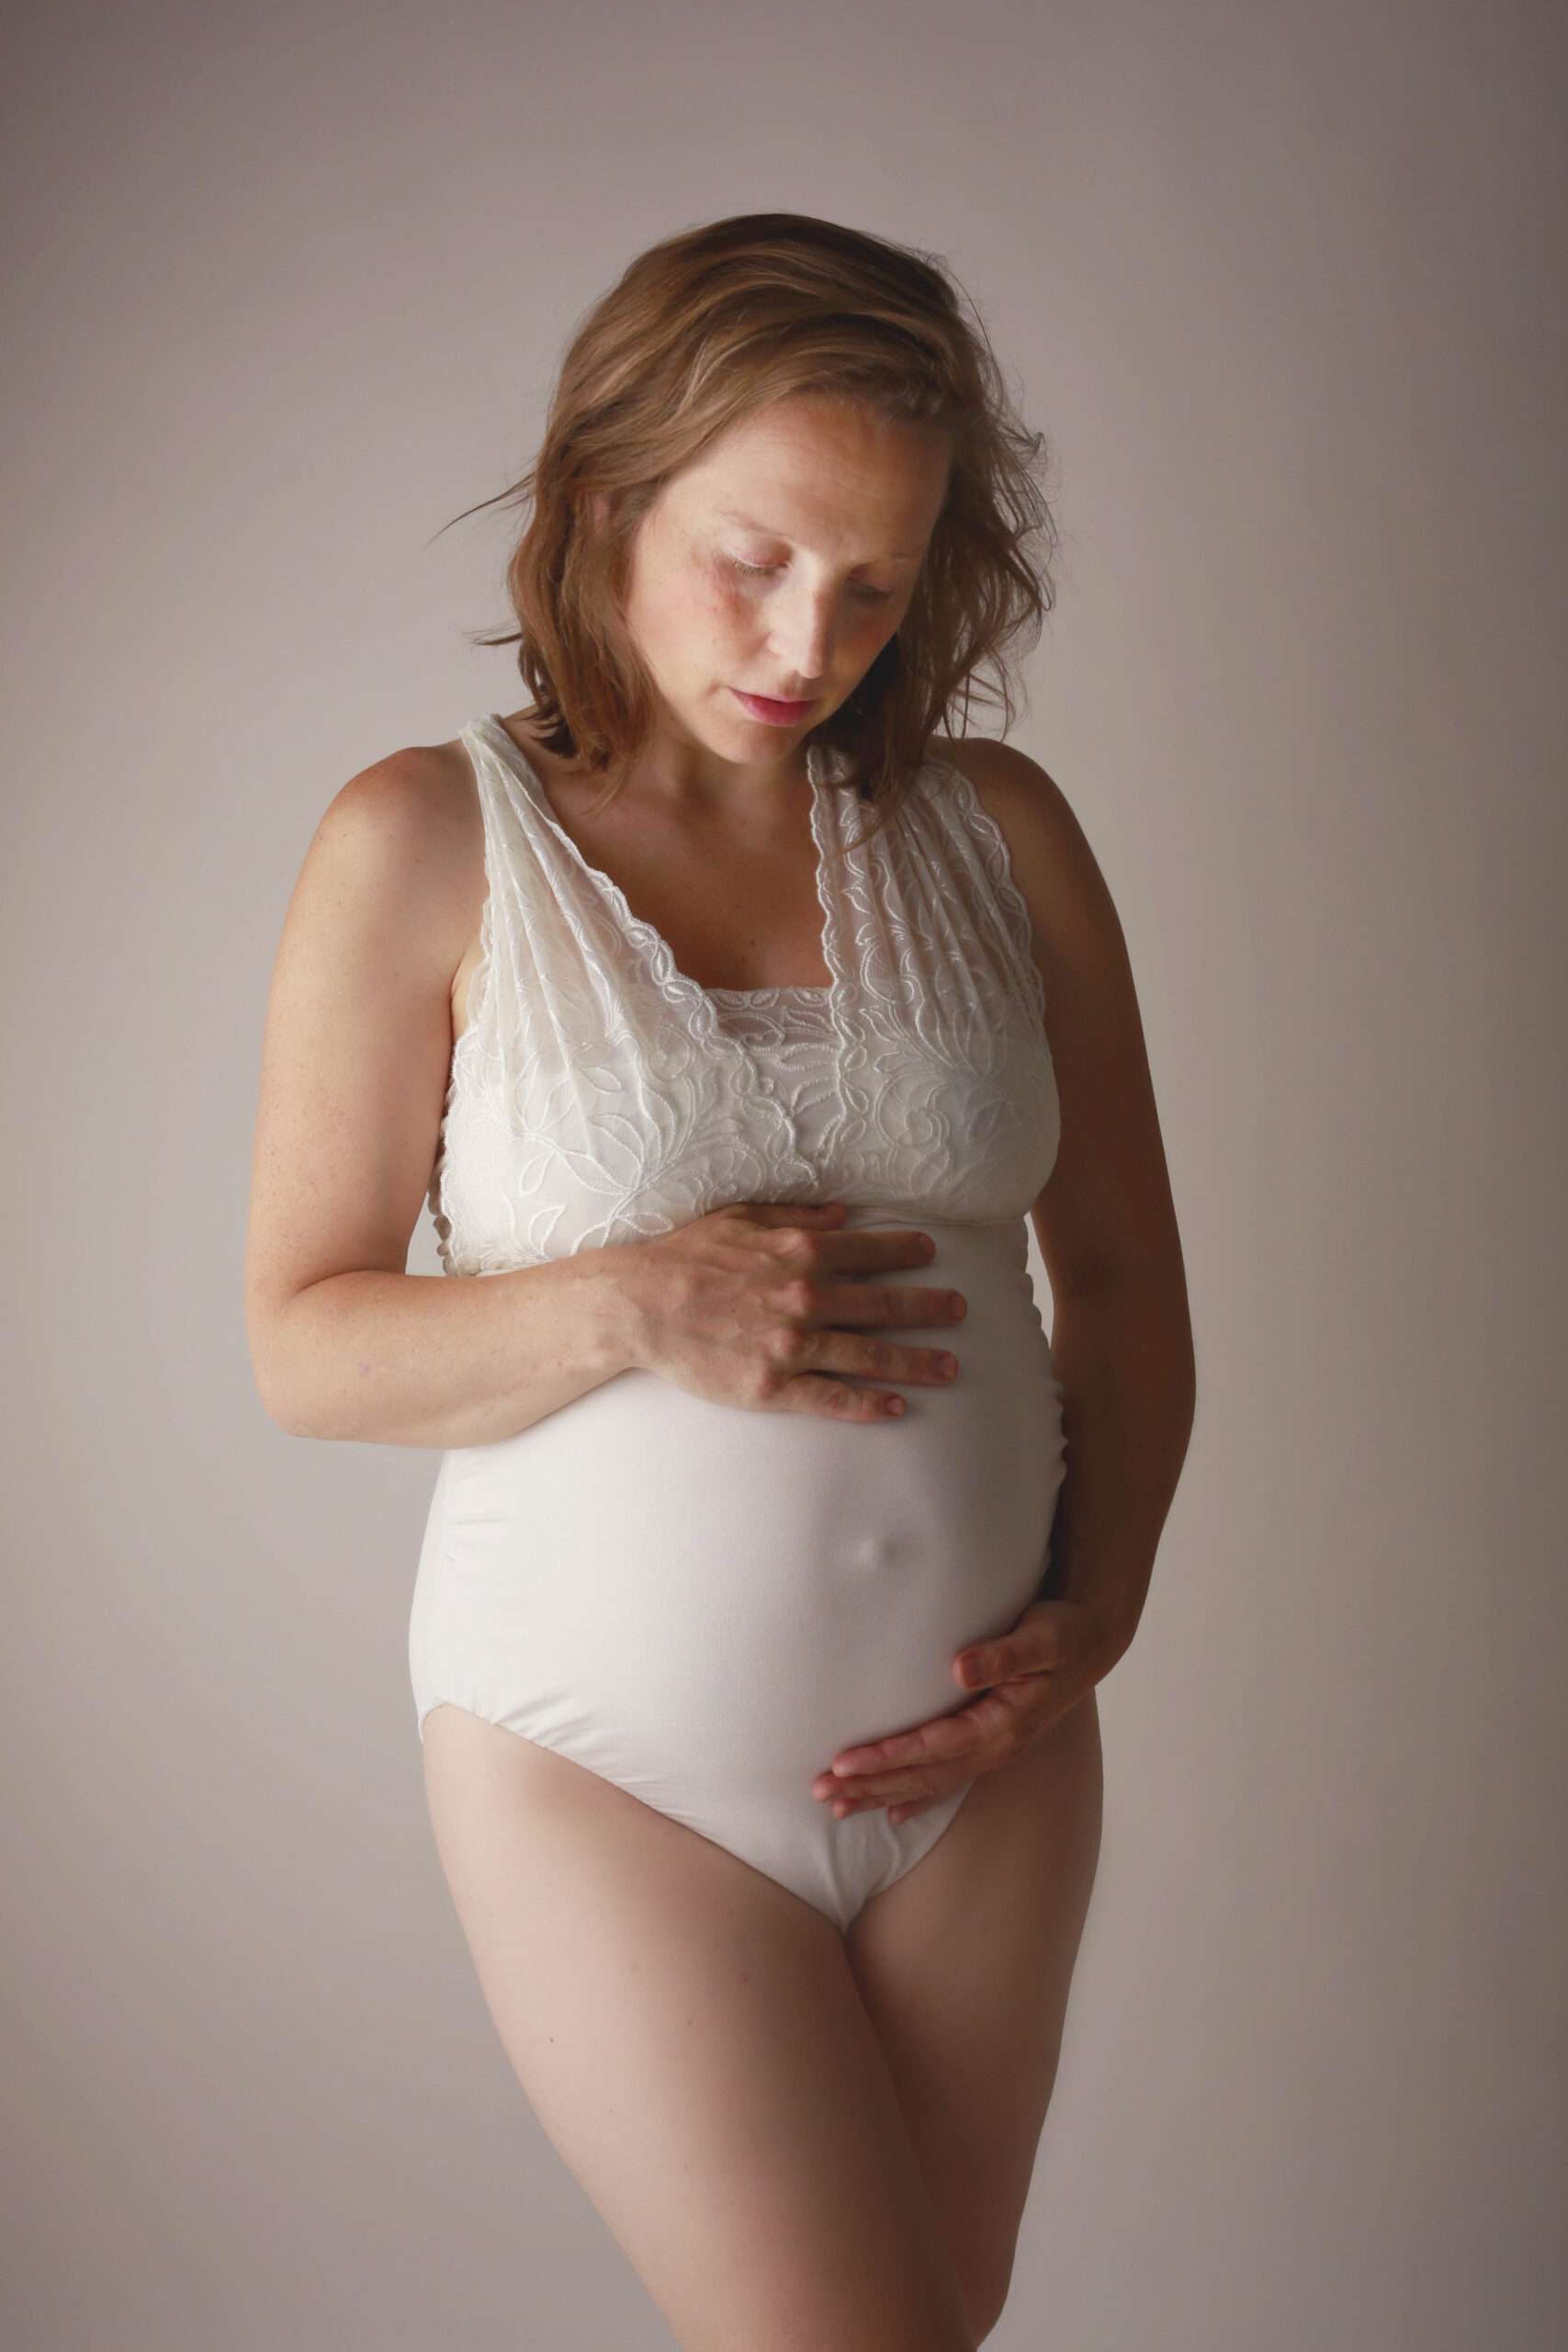 Zwangerschapsfotografie - Bolle buiken - Wijnegem - Fotograaf - Erika Van Haperen - Ilio